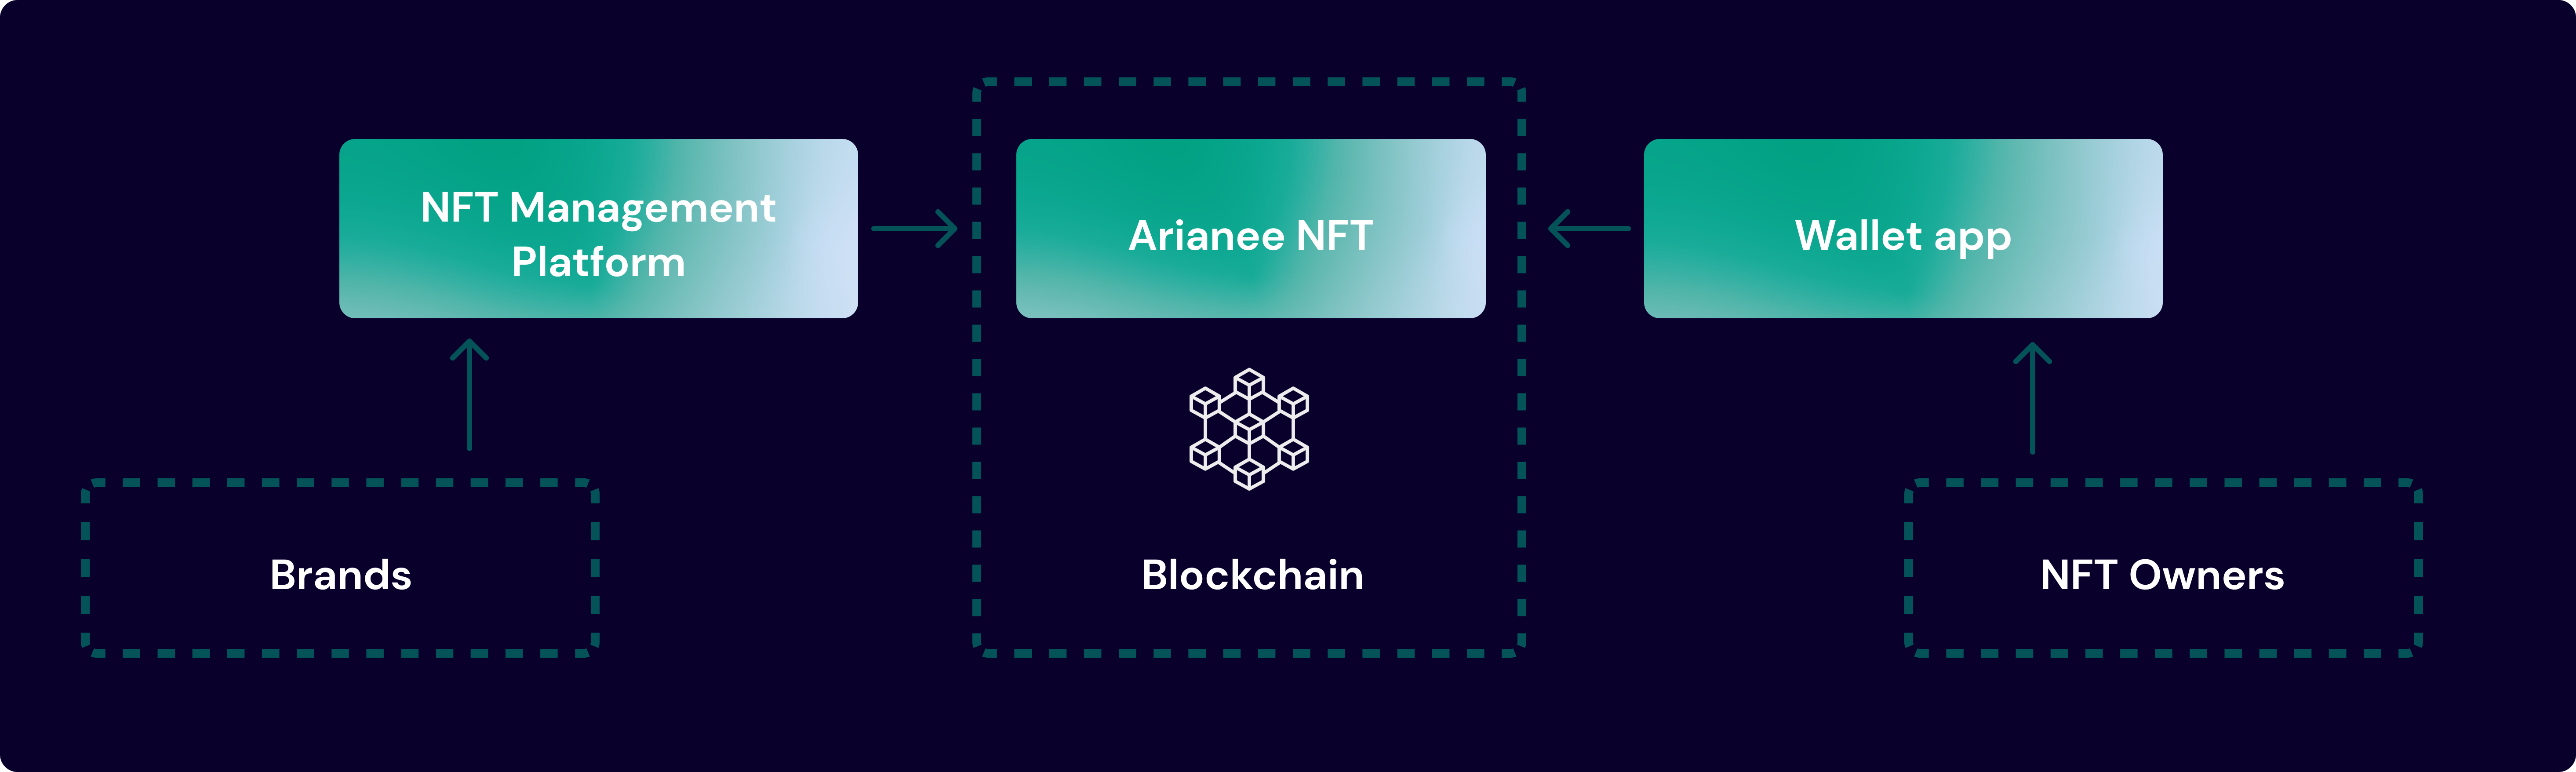 Arianee's ecosystem